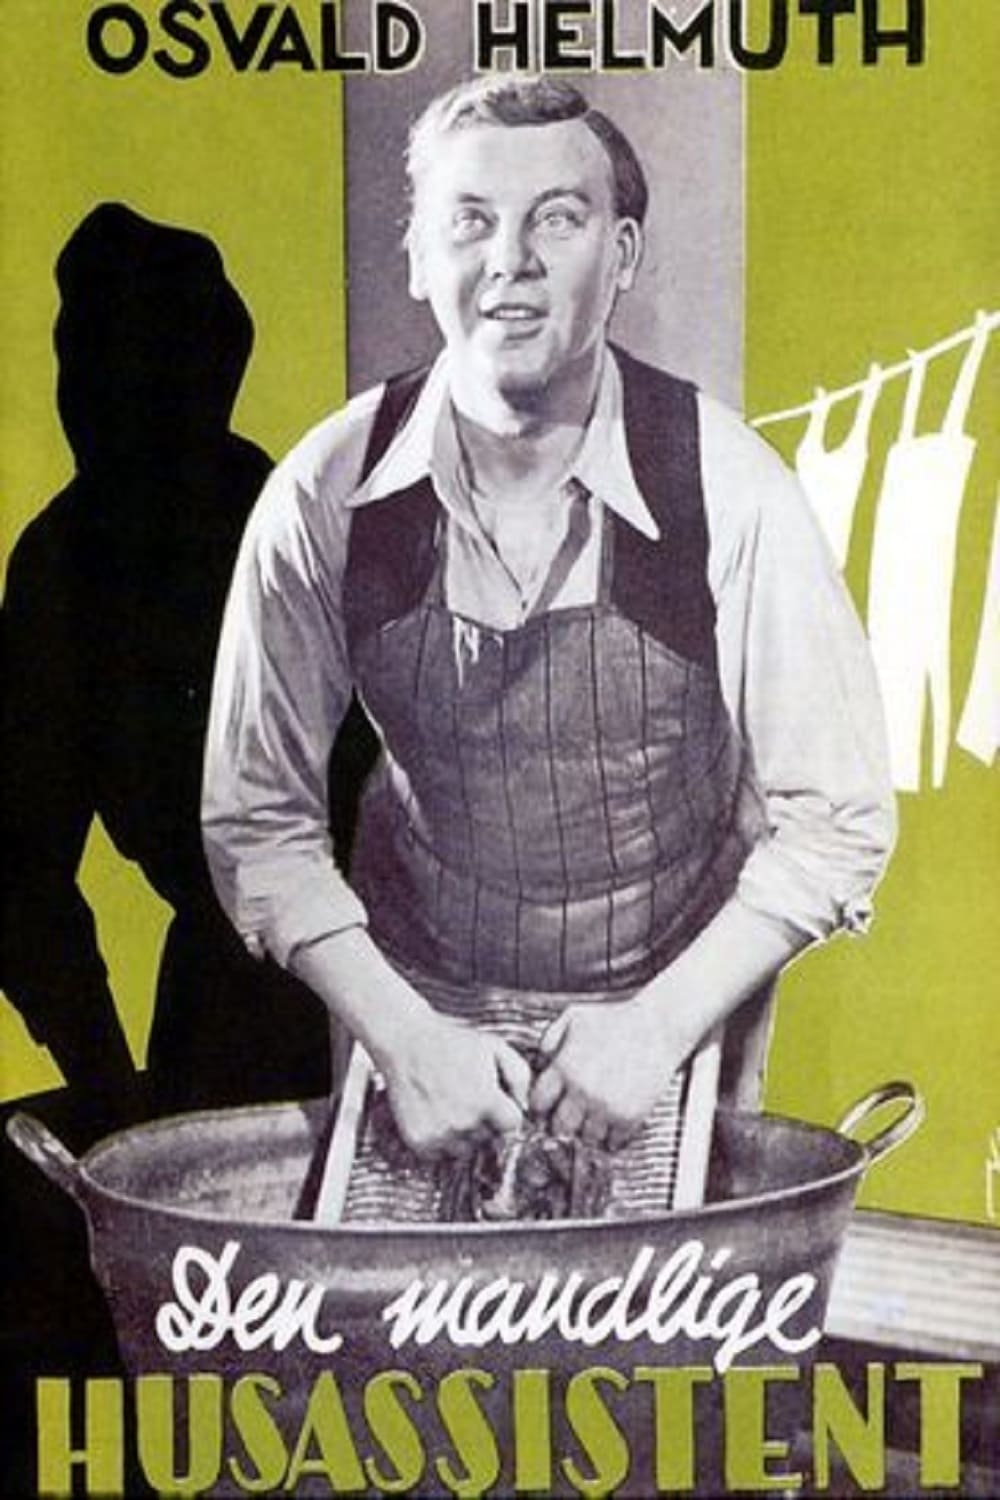 Den mandlige husassistent (1938)